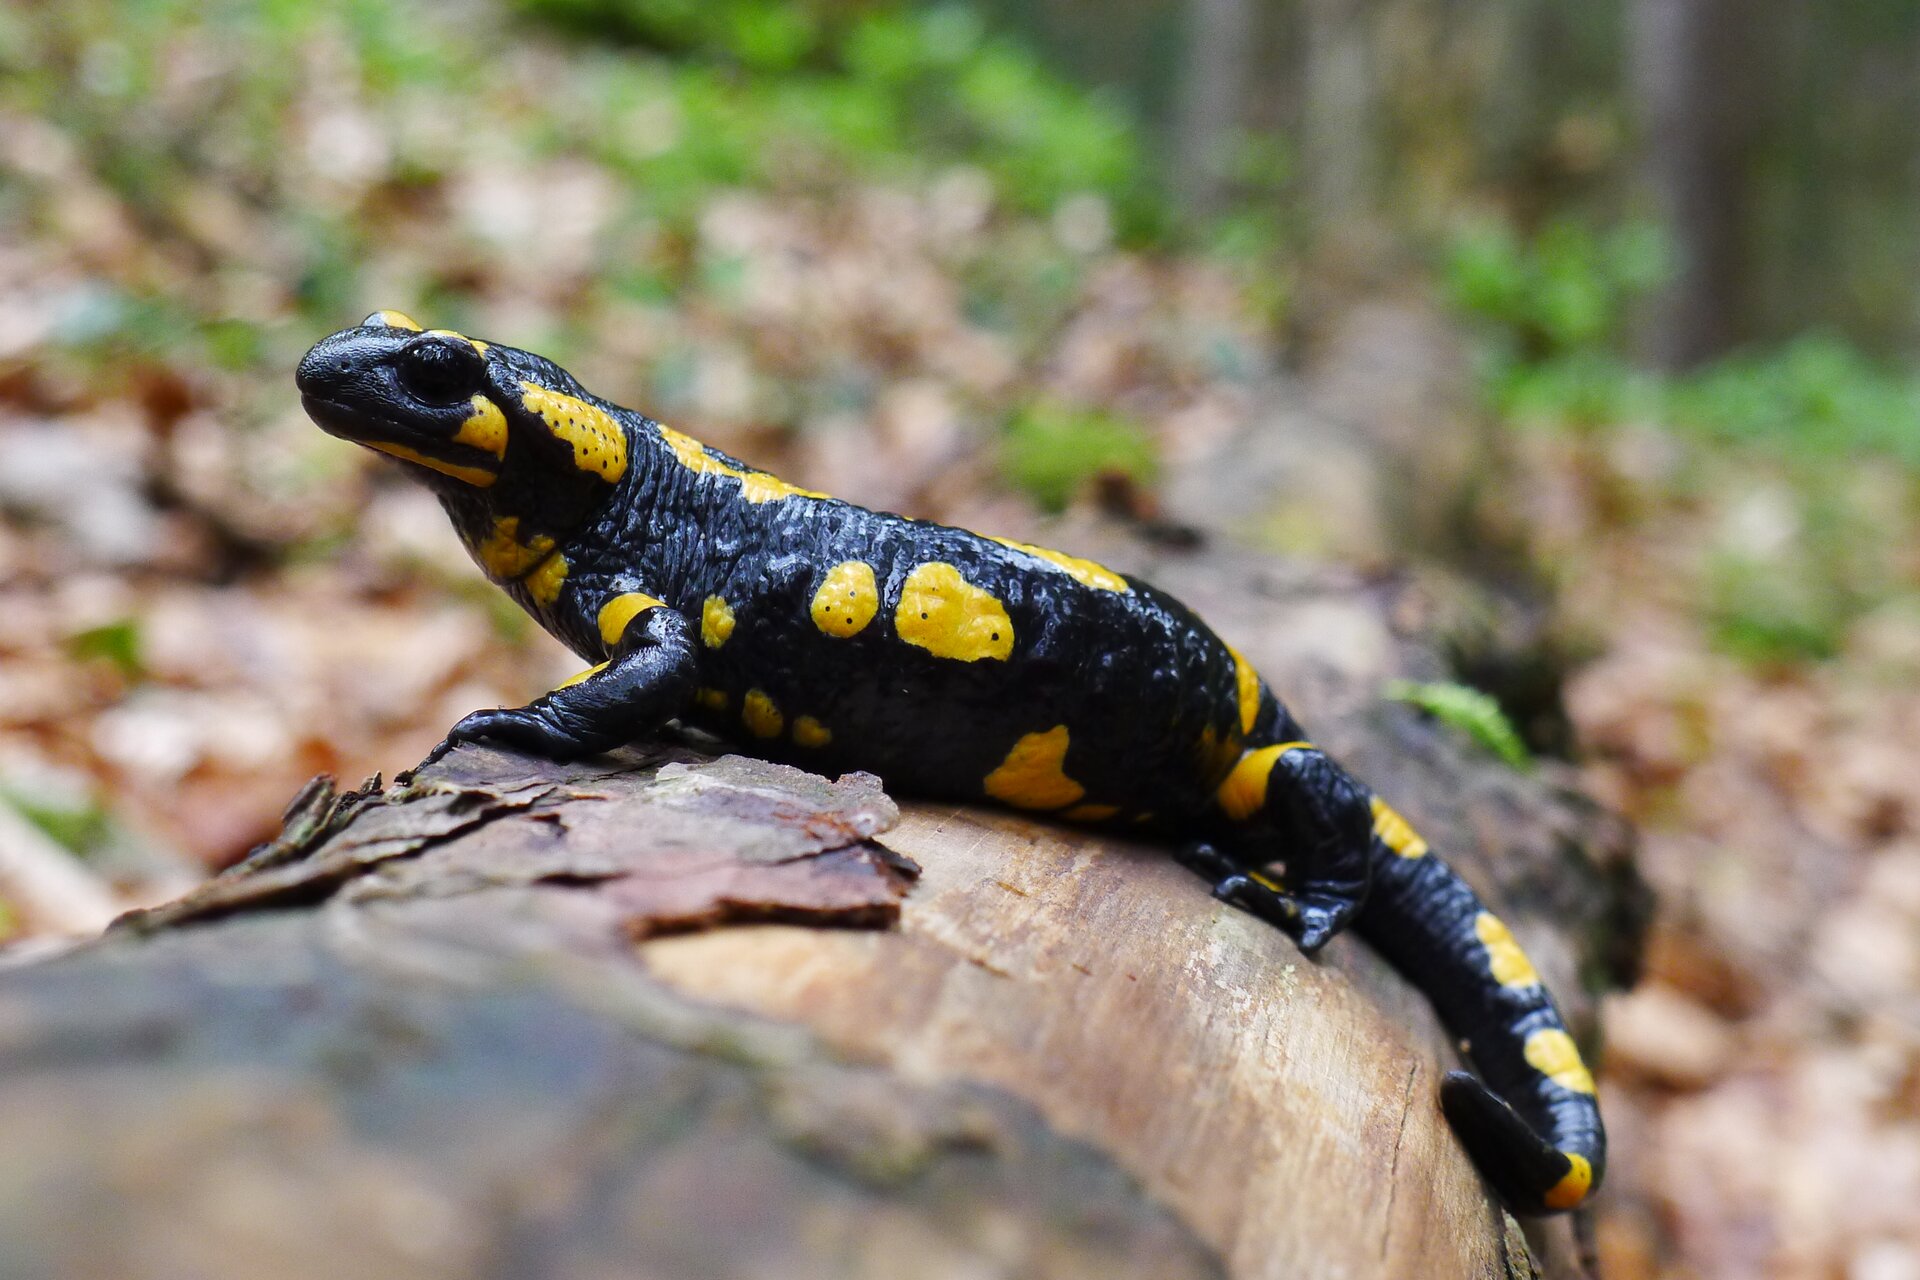 Salamandra plamista. Zwierzę ma krępe ciało czarne z żółtymi plamami o nieregularnym kształcie. Na głowie duże czarne oczy. Kończyny są krótkie.